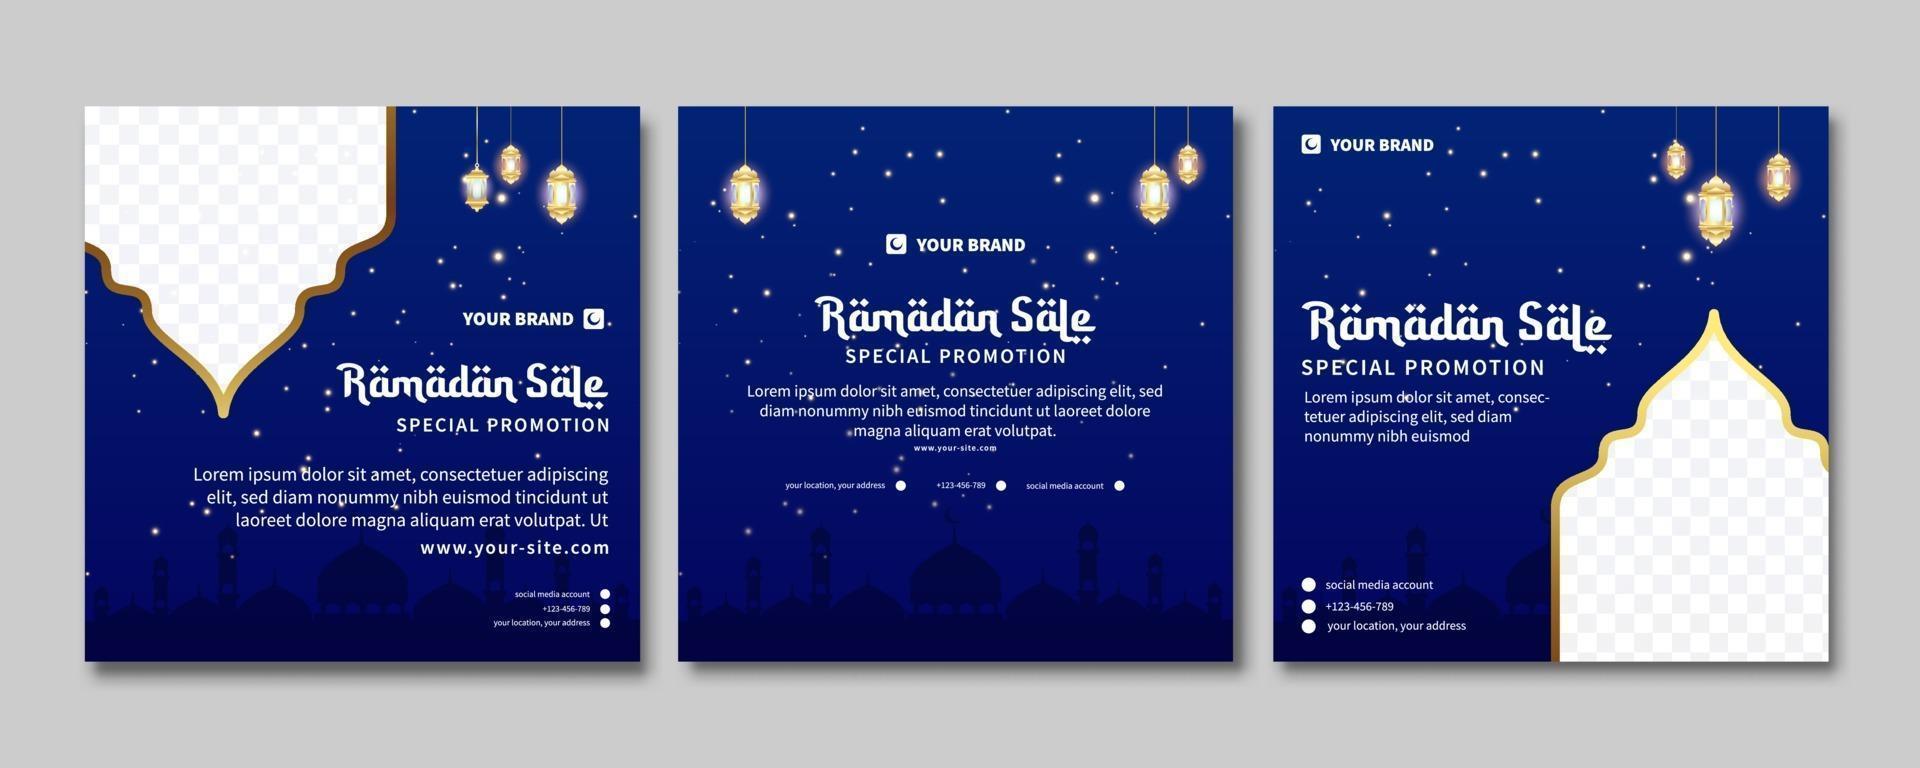 uppsättning ramadan försäljning banner. webb marknadsföring banner för gratulationskort, kupong, sociala medier post mall för islamisk händelse vektor